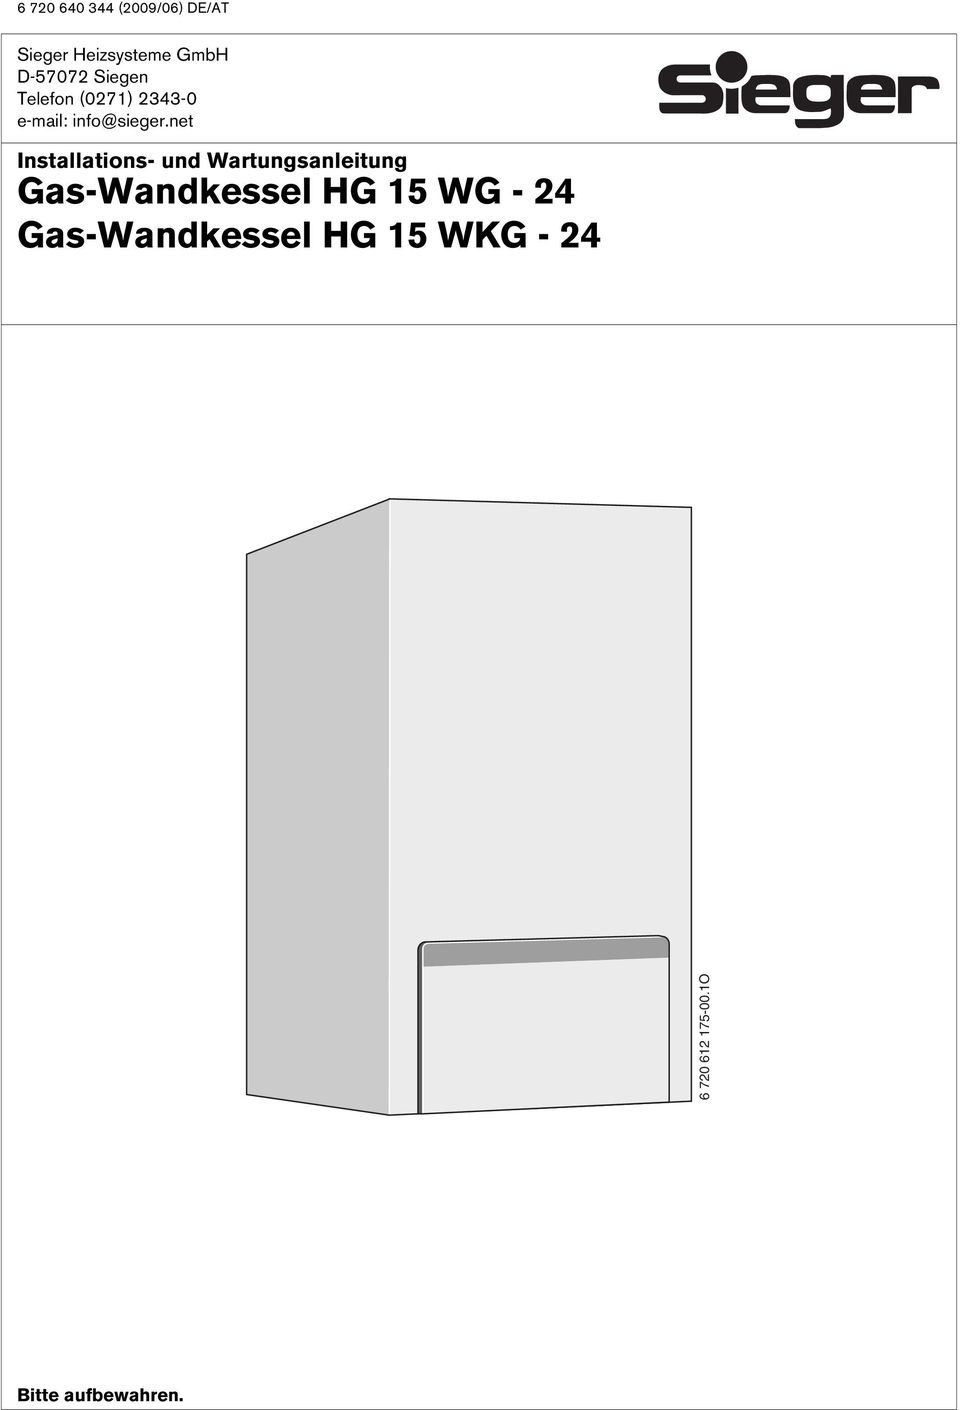 net Installations- und Wartungsanleitung Gas-Wandkessel HG 15